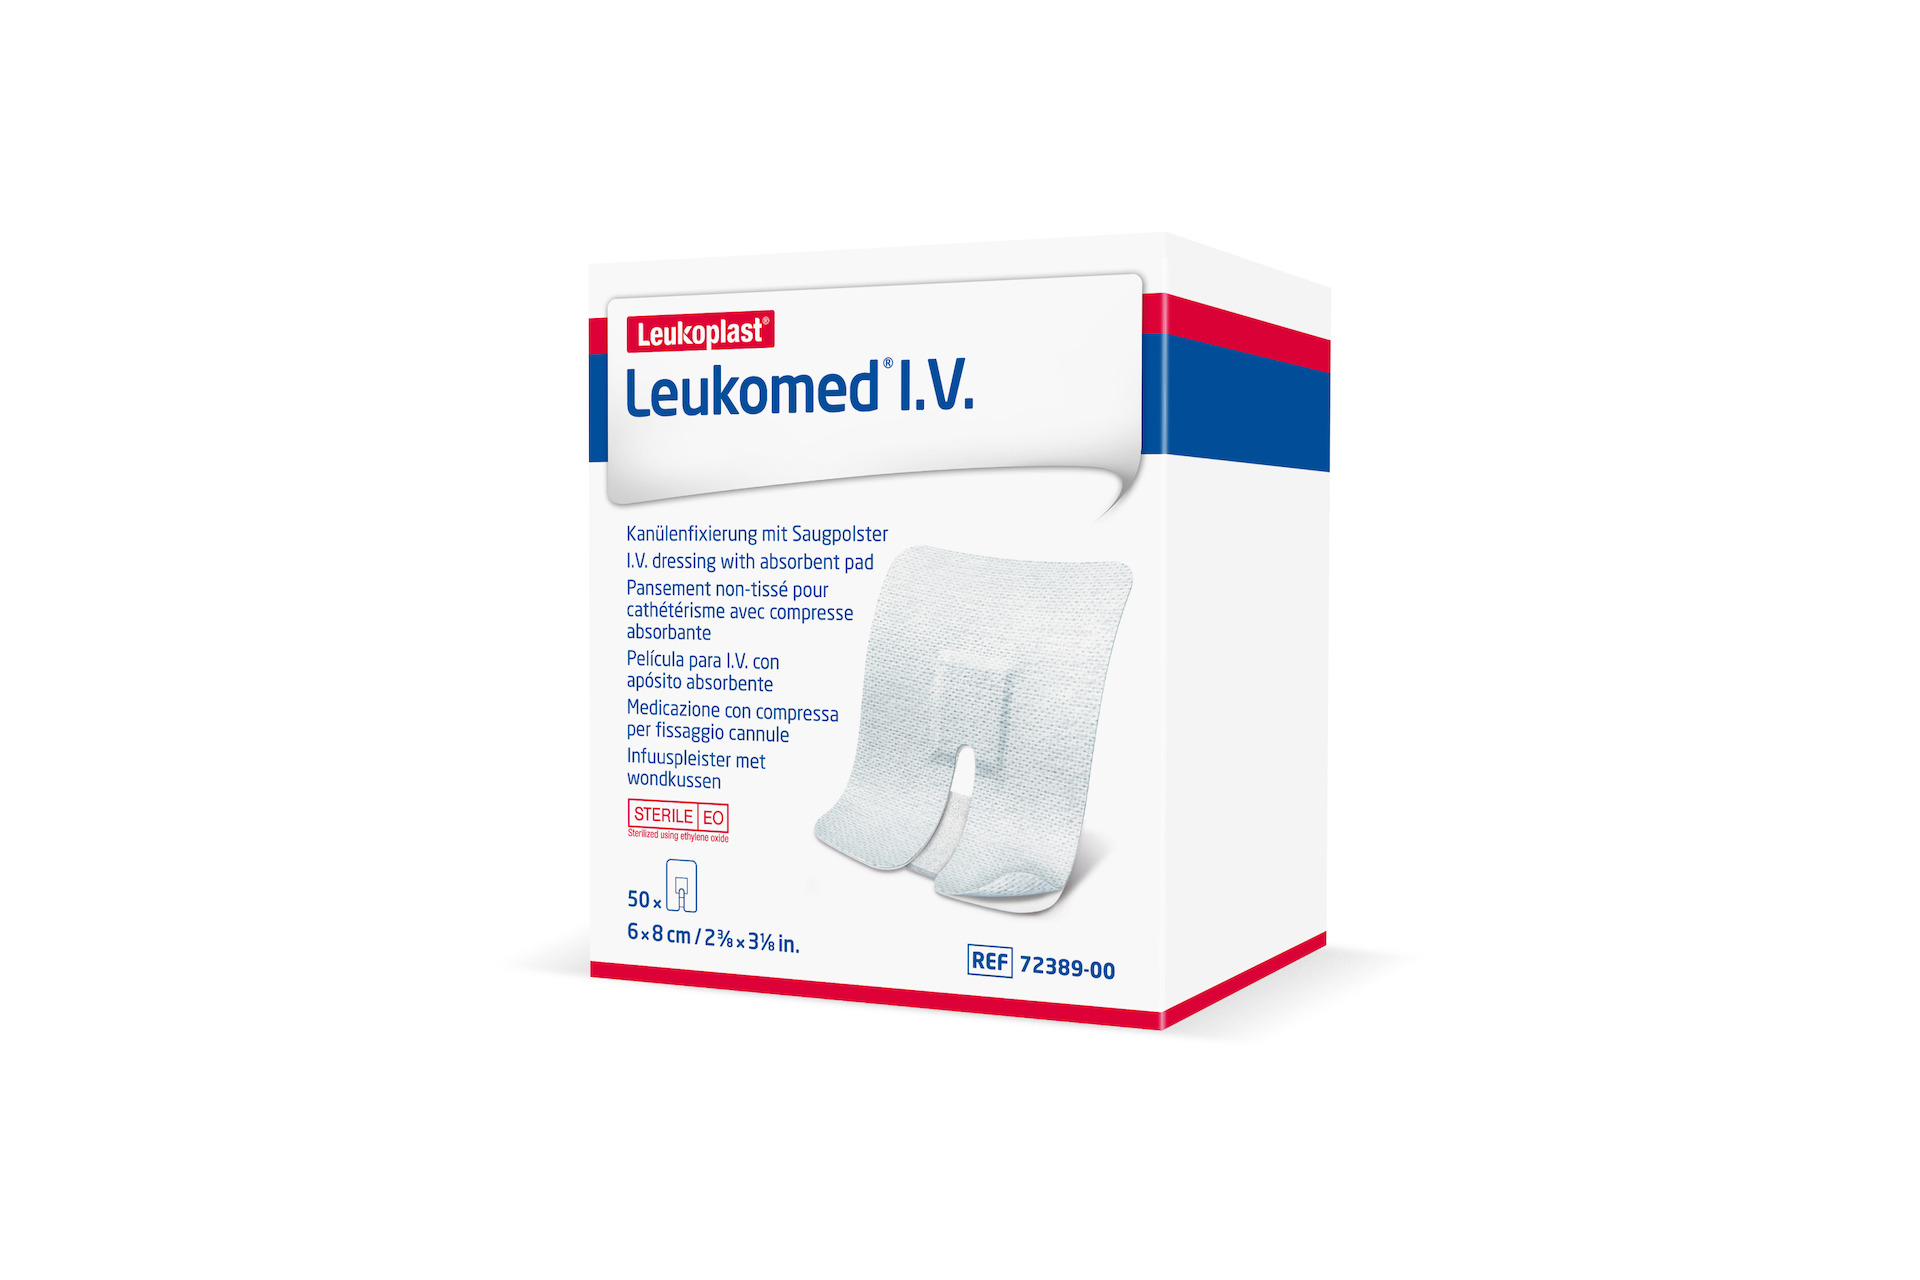 Leukomed® I.V. Kanülenpflaster steril